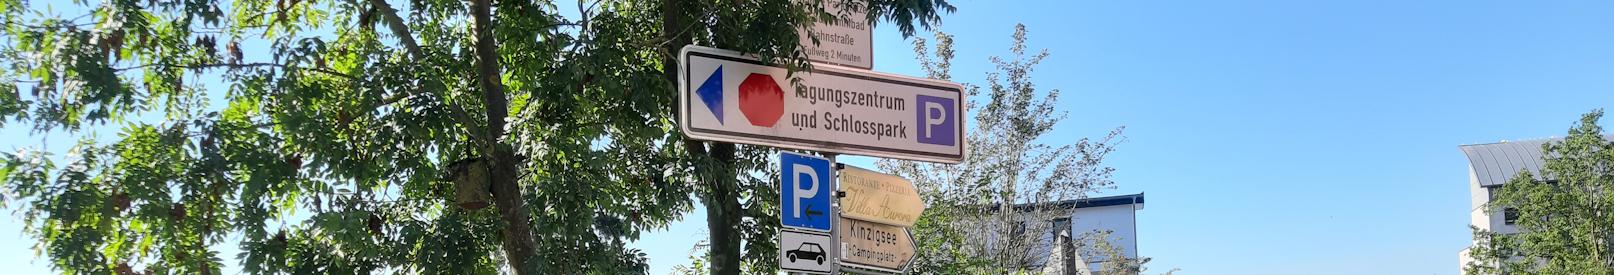 Bild der Parkplatzbeschilderung am Schlosspark